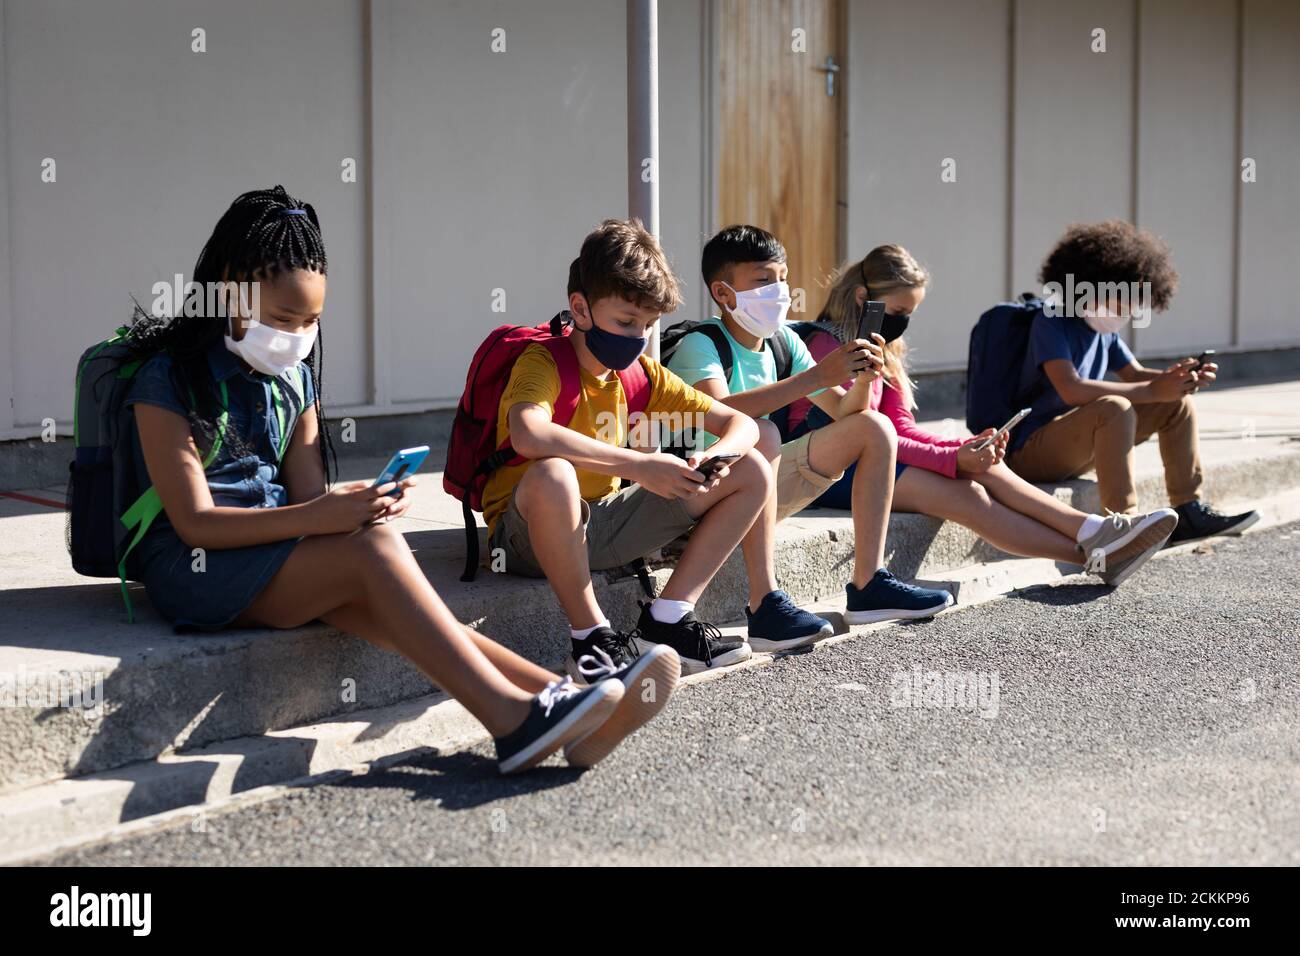 Groupe d'enfants portant un masque facial avec un smartphone lorsqu'ils sont assis ensemble Banque D'Images